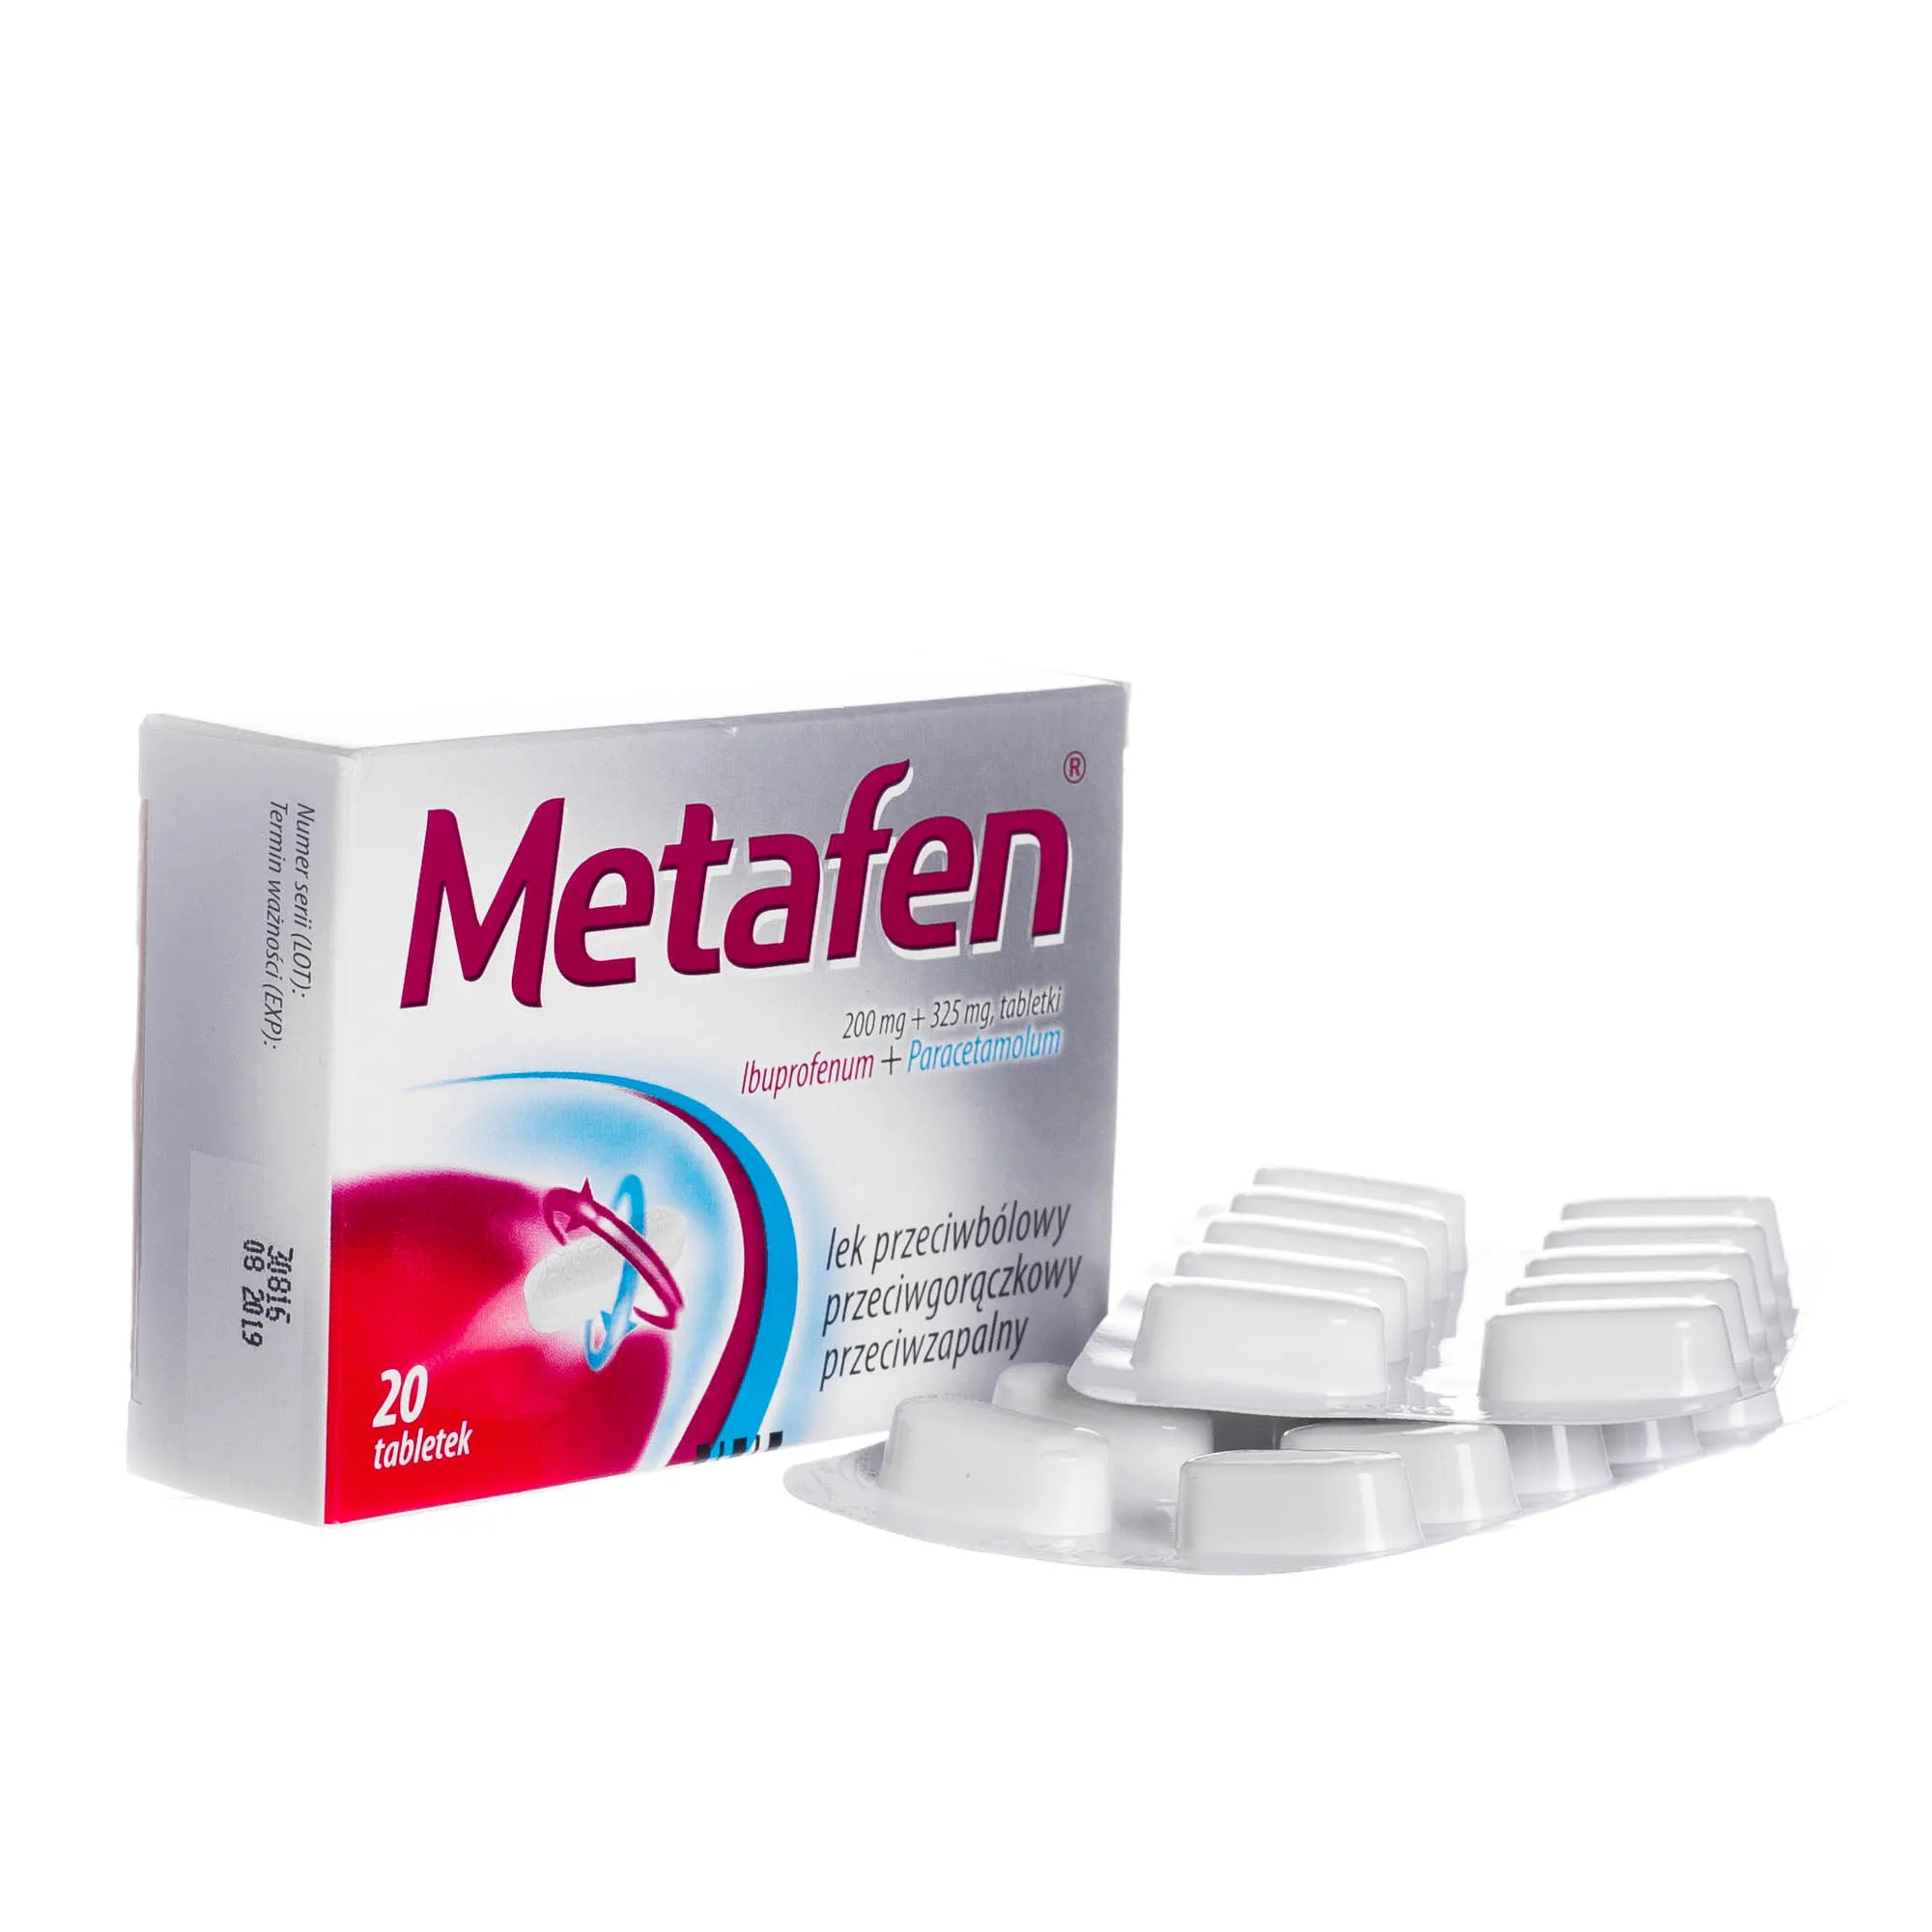 Metafen, lek przeciwbólowy i przeciwgorączkowy, 20 tabletek